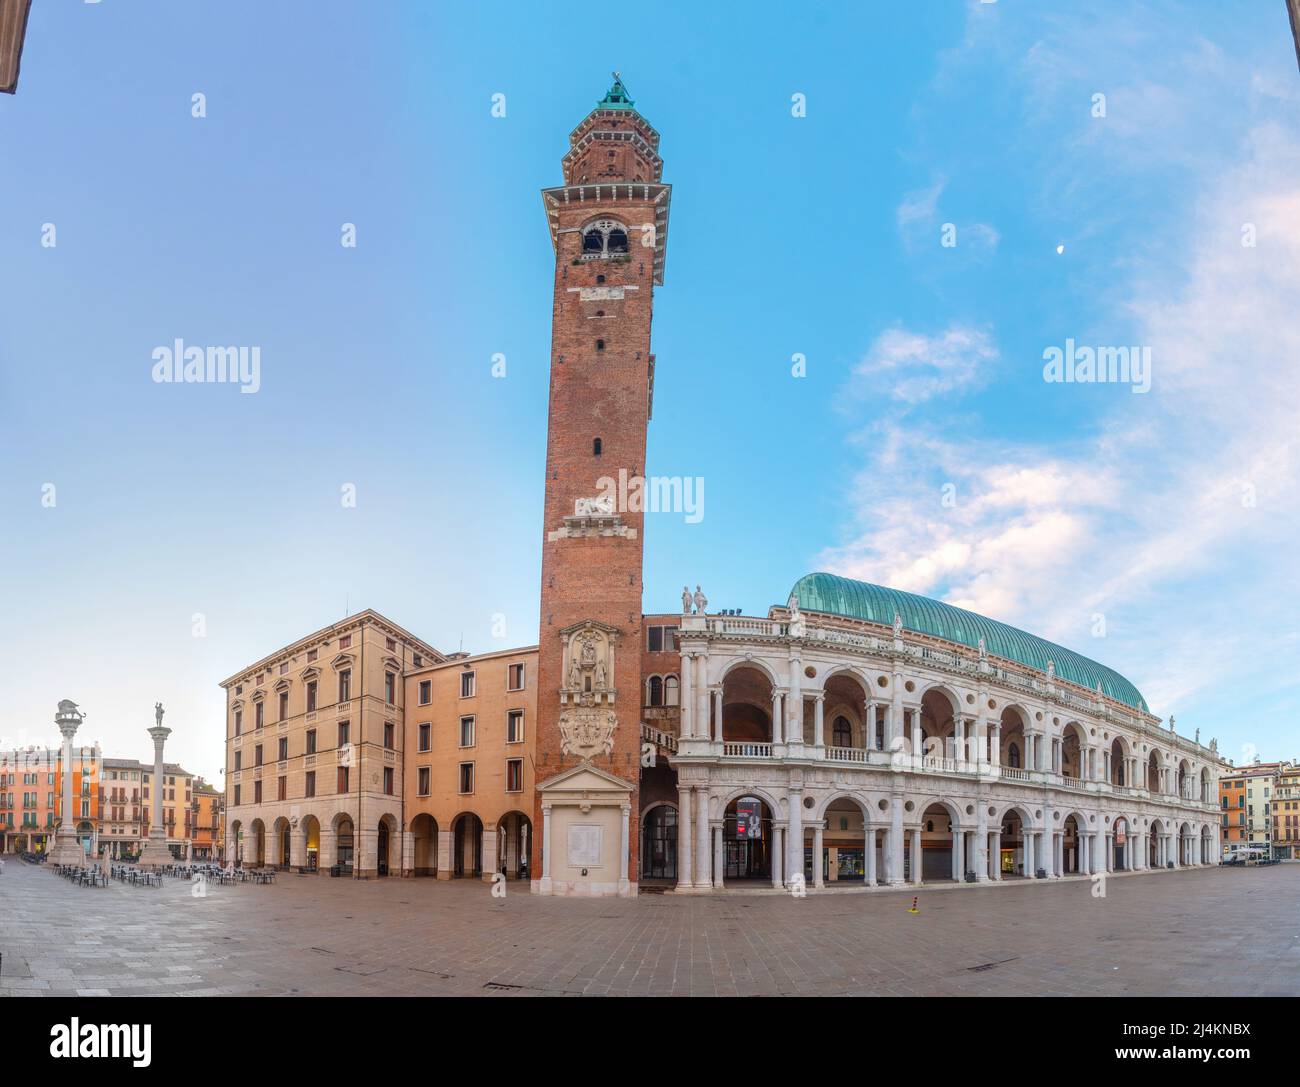 Vicenza, Italien, 29. August 2021: Sonnenaufgang über der Basilika Palladiana auf dem Piazza dei Signori in der italienischen Stadt Vicenza Stockfoto